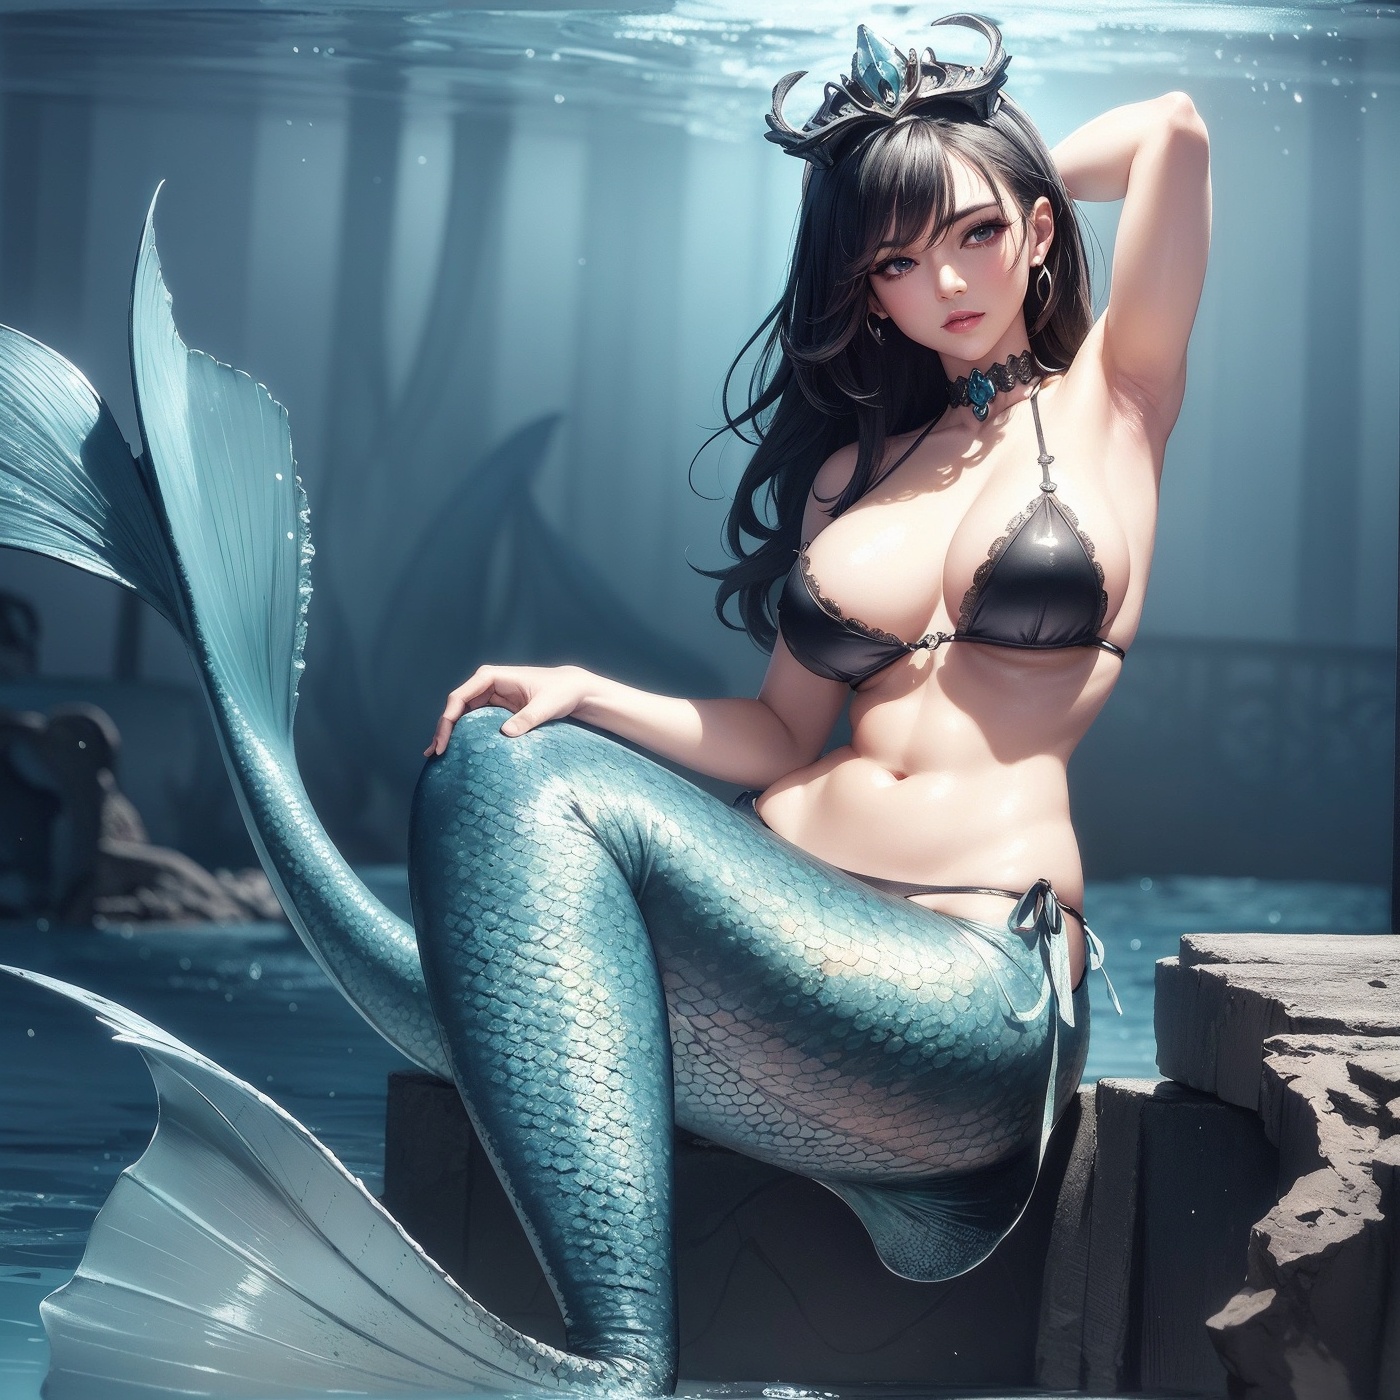 girls-with-large-breasts-Ocean-mermaid-II